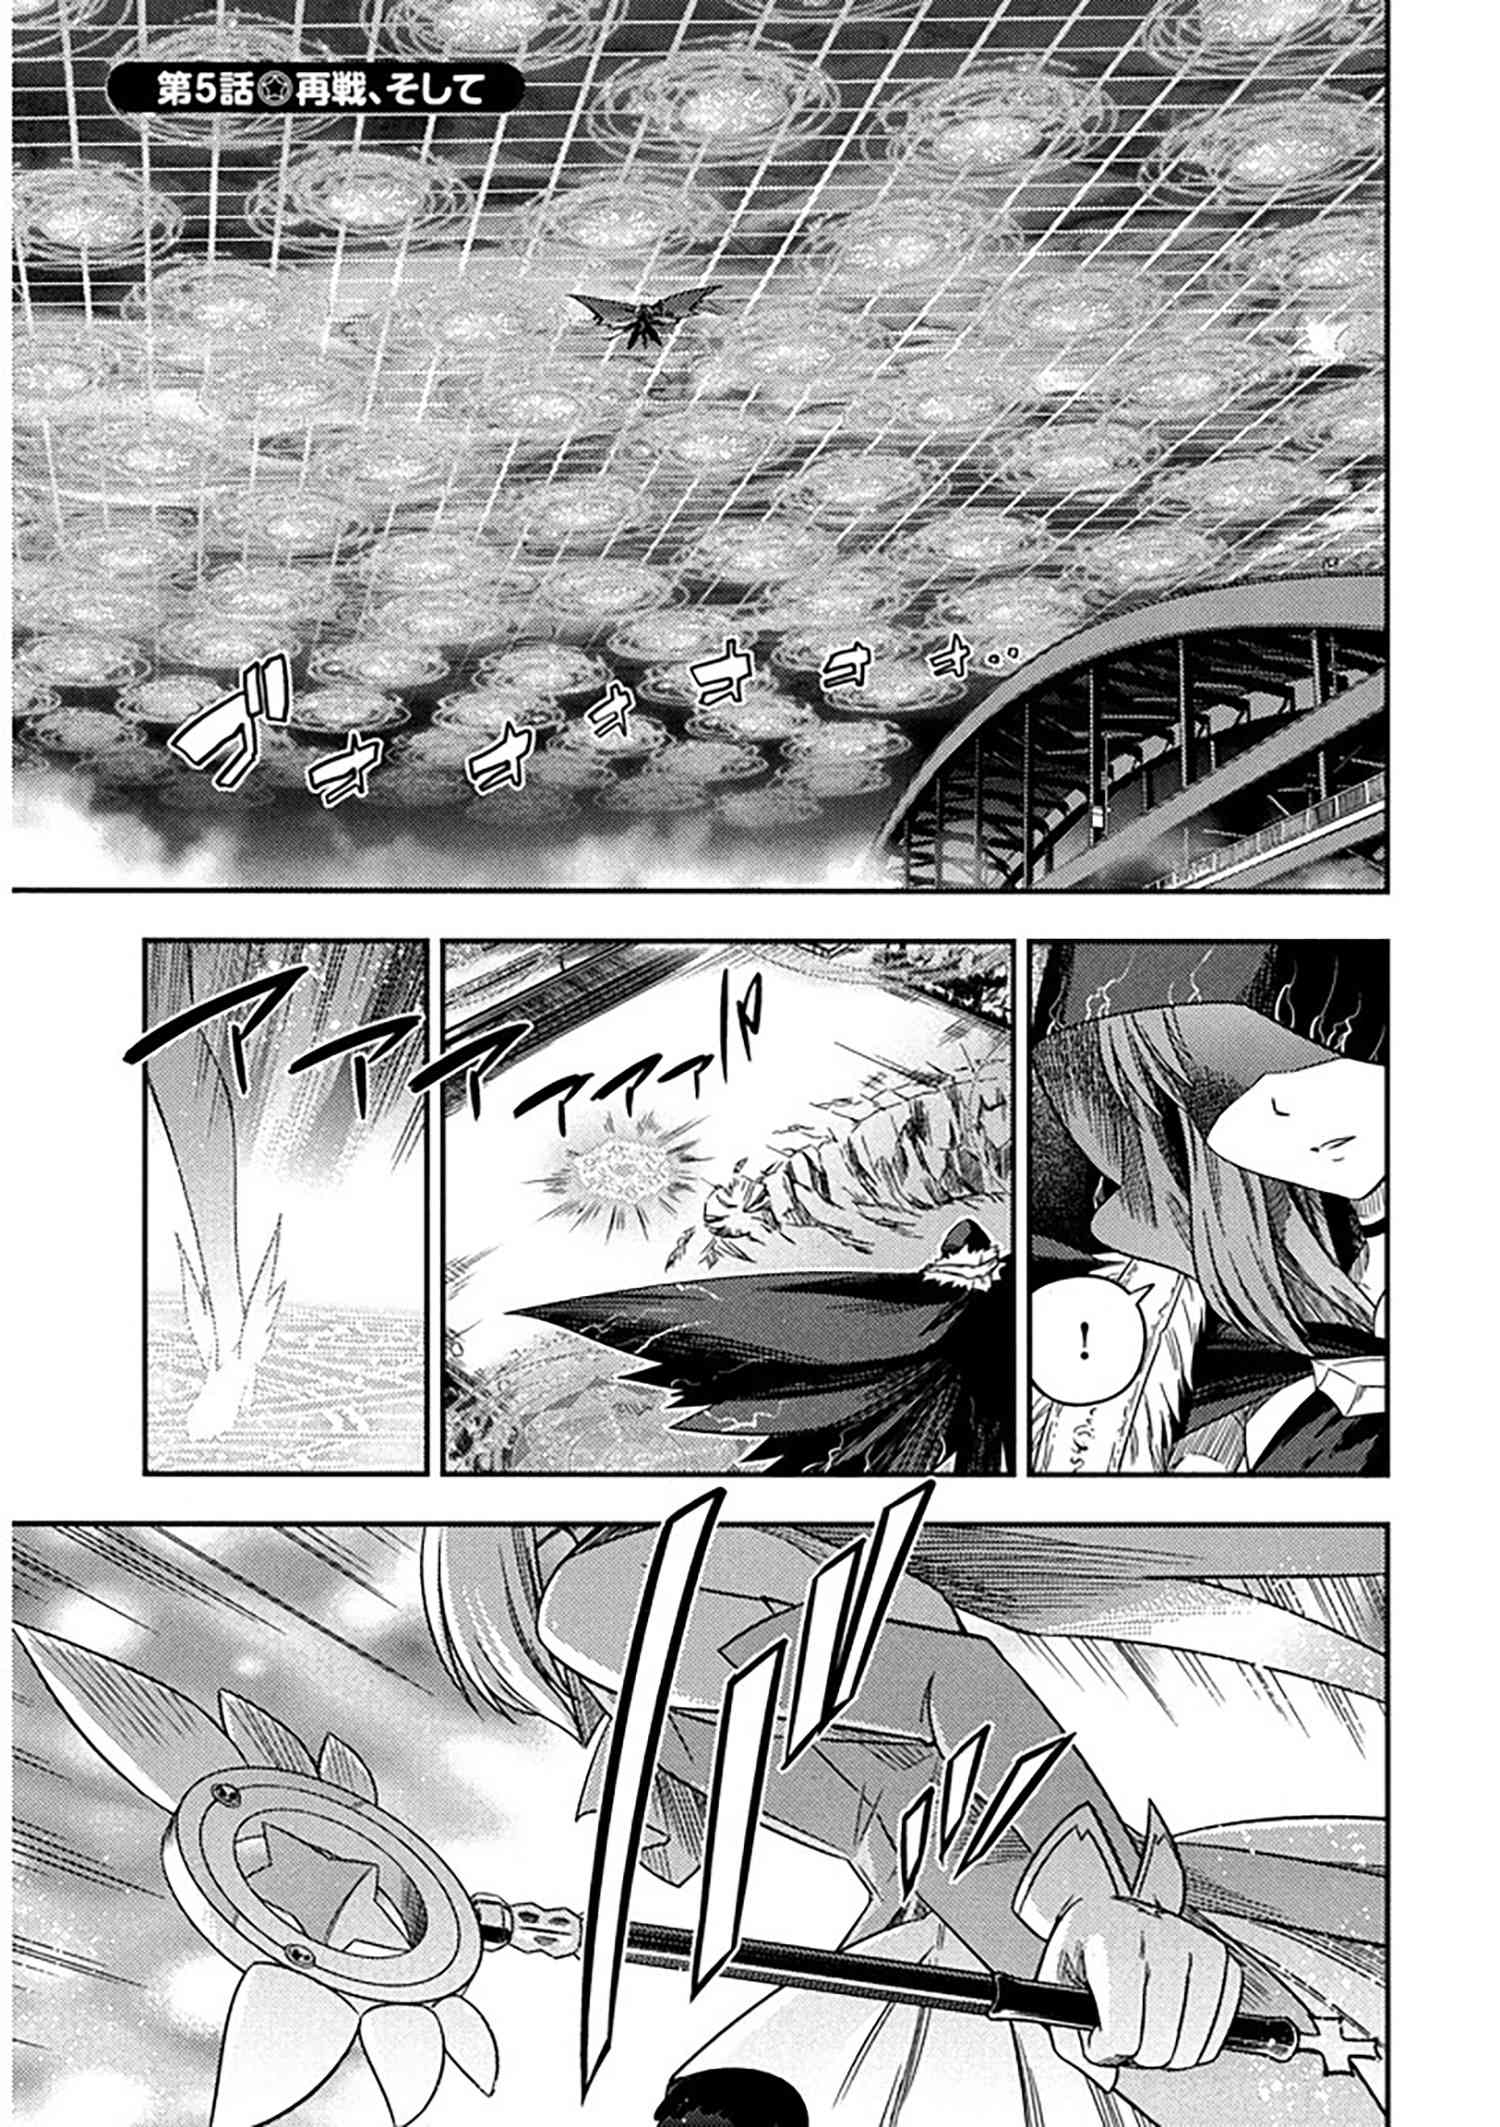 Fate Kaleid Liner プリズマ イリヤ 第5話 1 再戦 そして Type Moonコミックエース 無料で漫画が読めるオンラインマガジン